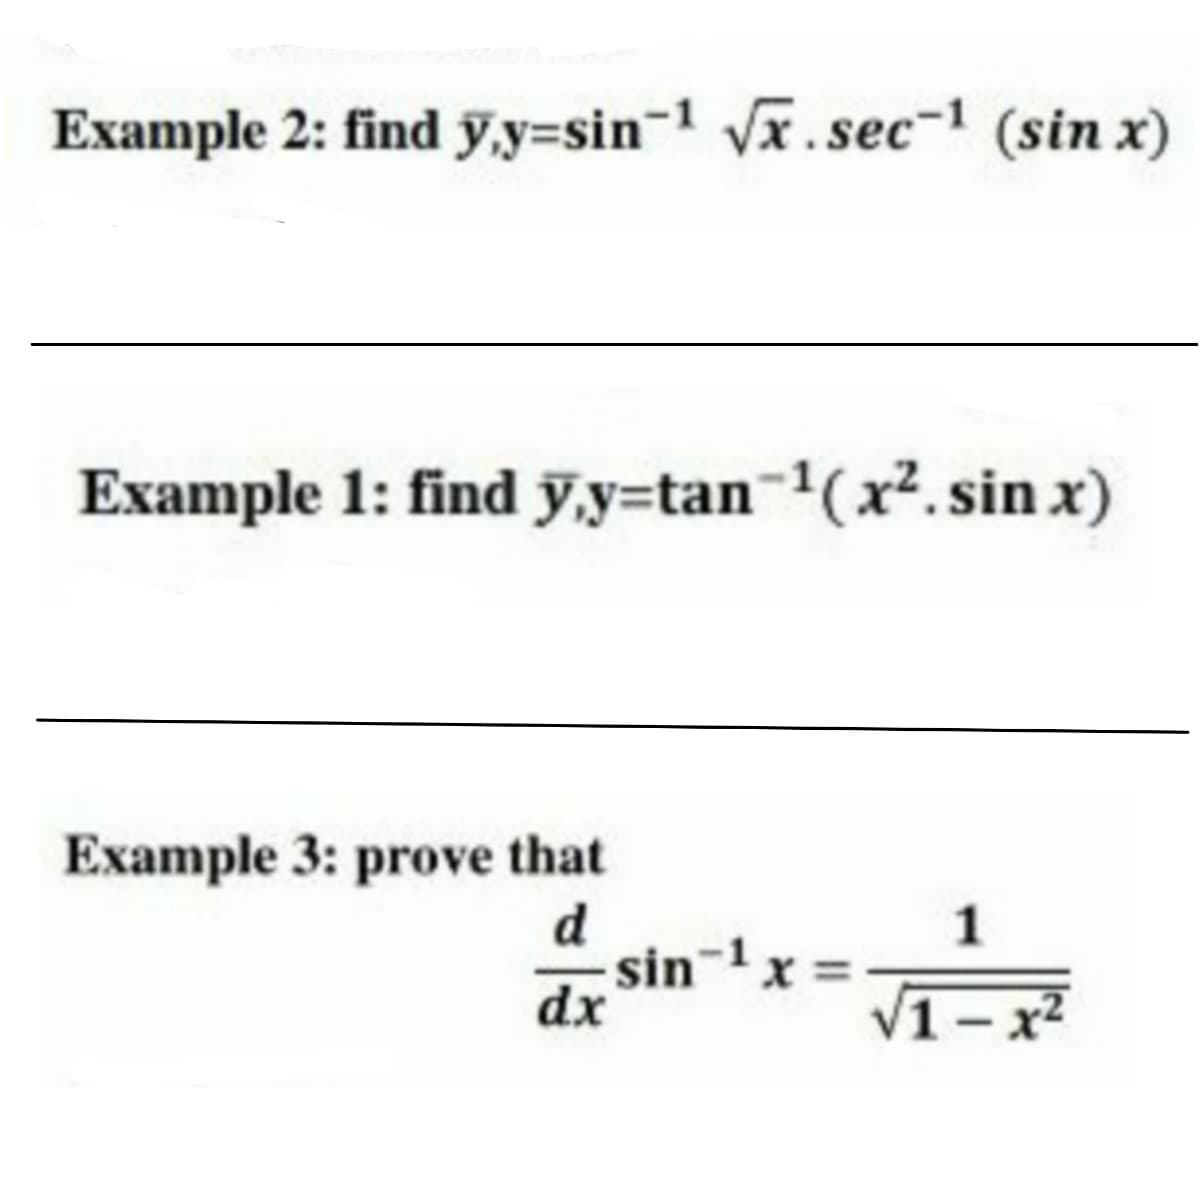 Example 2: find ỹ,y=sin-1 Vx.sec-1 (sin x)
Example 1: find ỹ,y=tan-1(x². sin x)
Example 3: prove that
d
sin-1
dx
1
x =
1-x2
